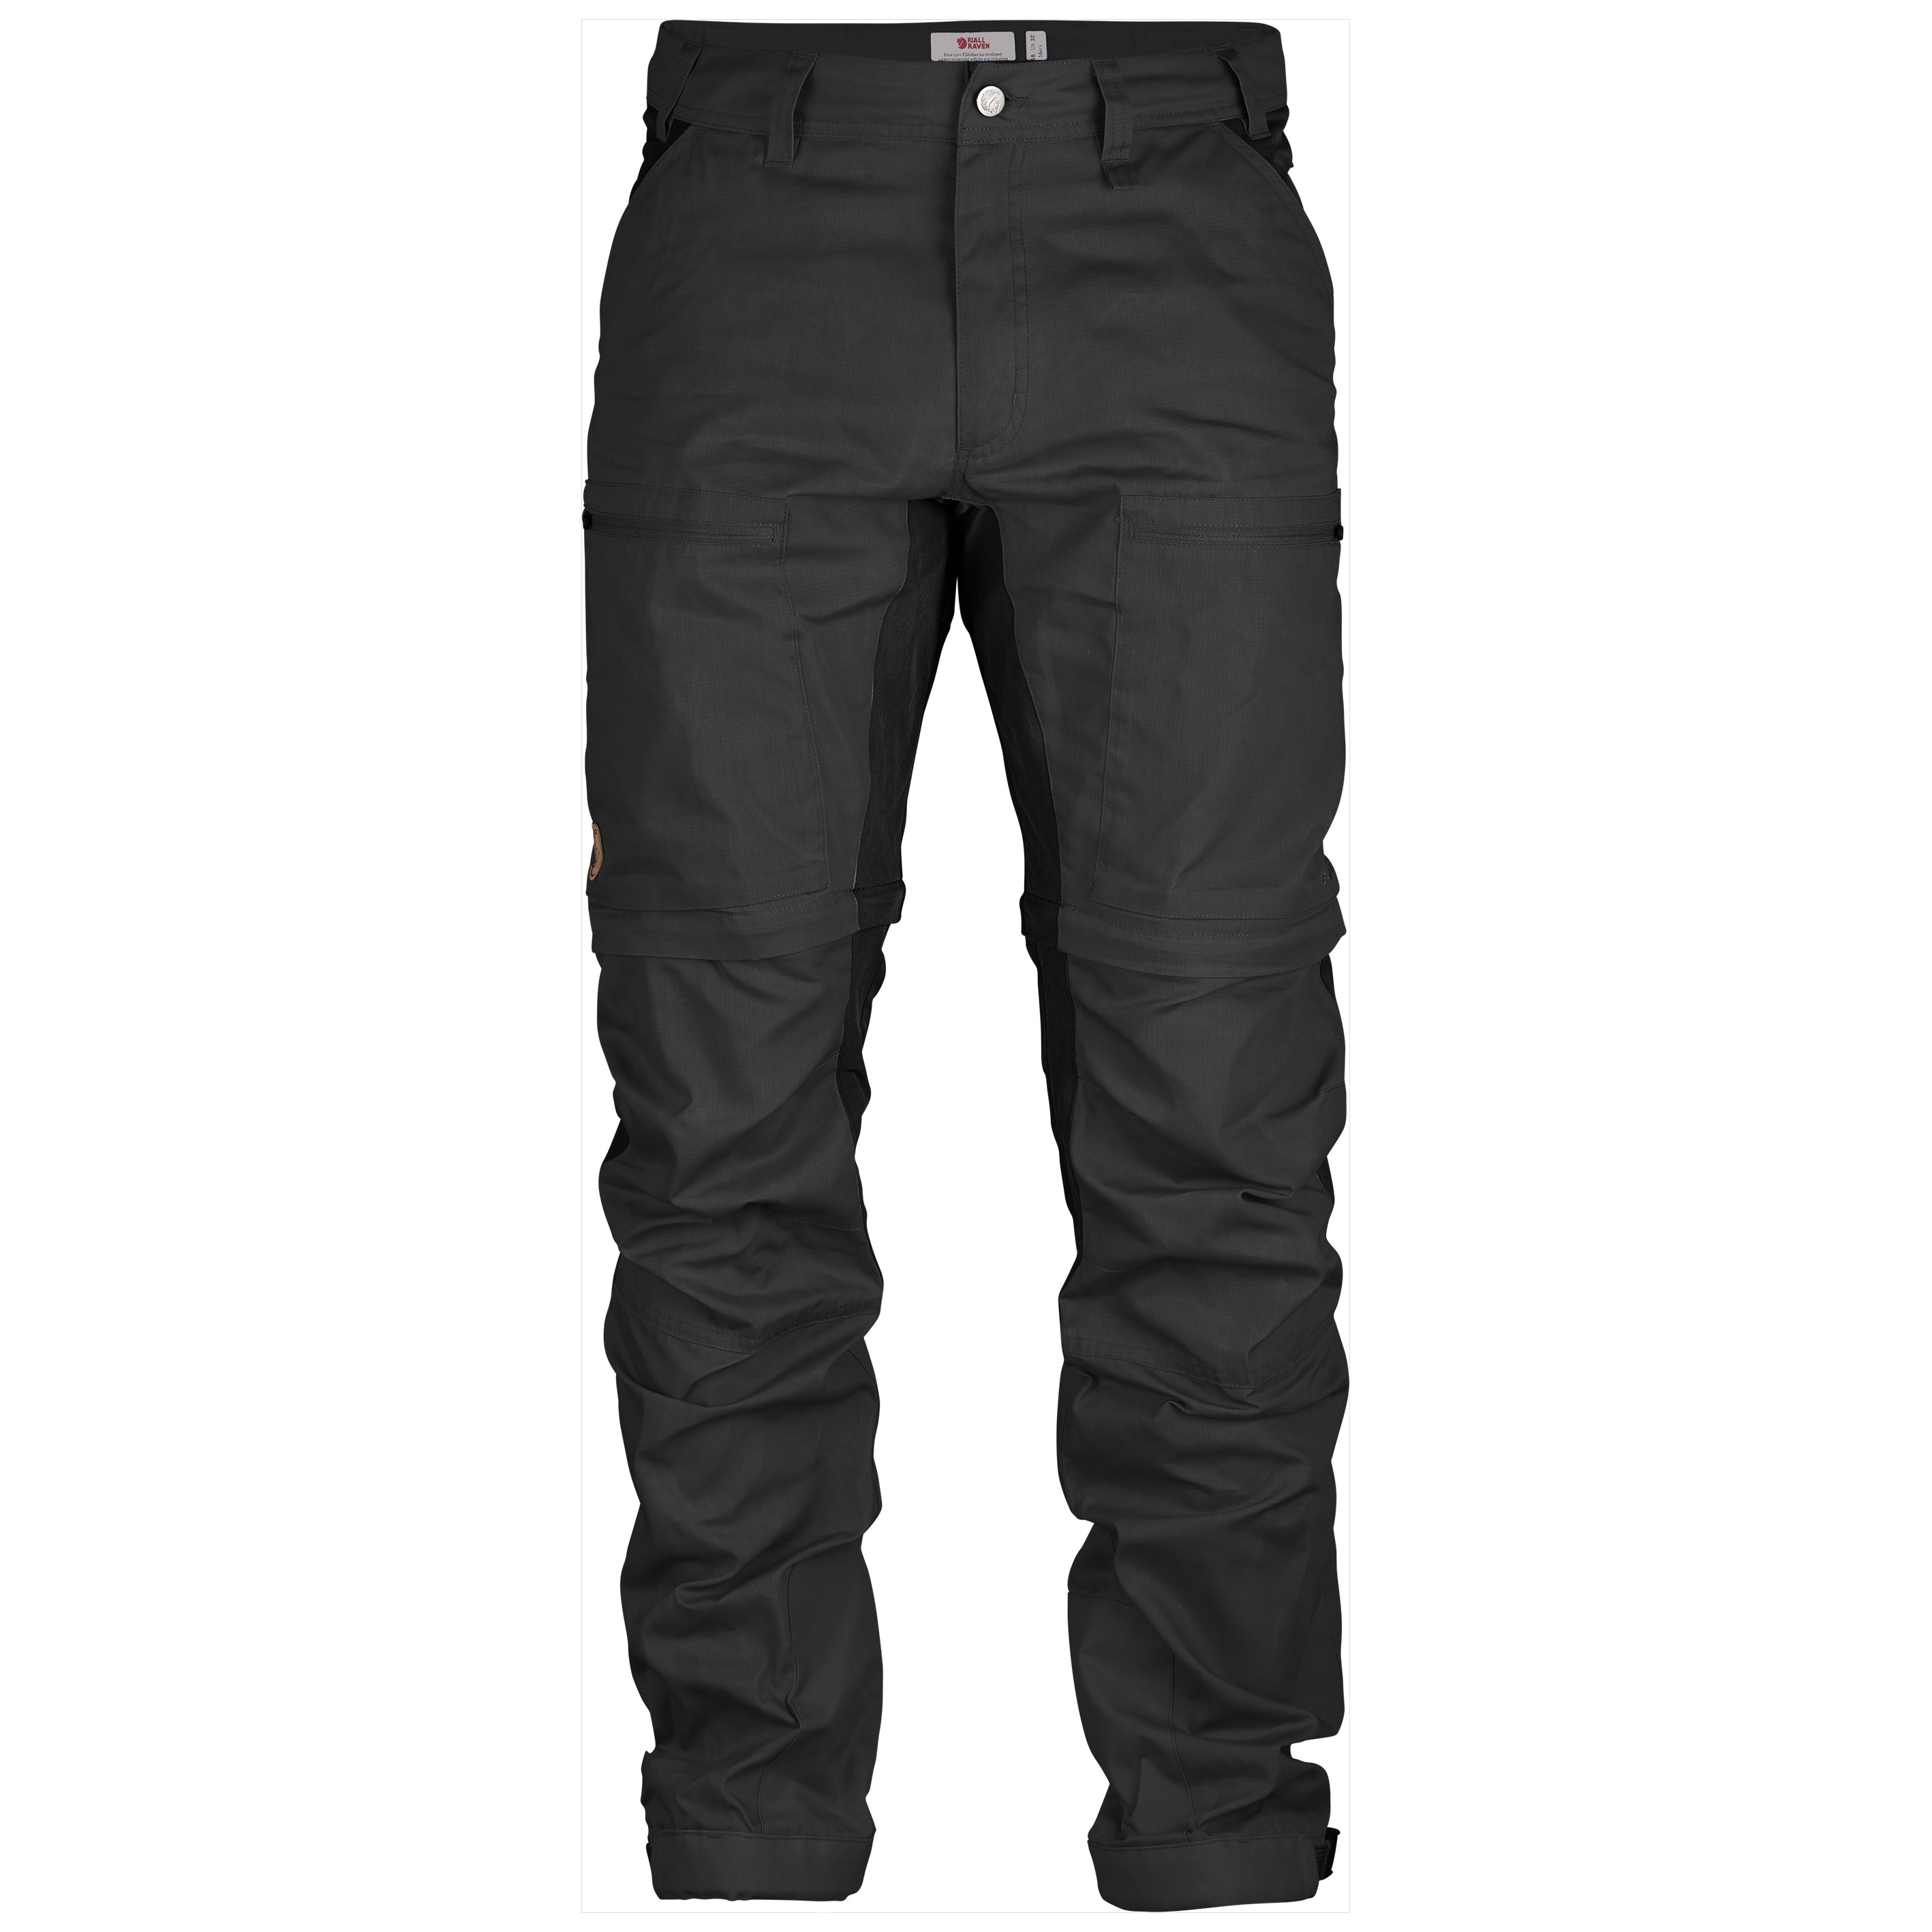 Fjällräven Fjällräven Men's Abisko Lite Trekking Zip-Off Trousers Dark Grey/Black 48 Long, Dark Grey/Black